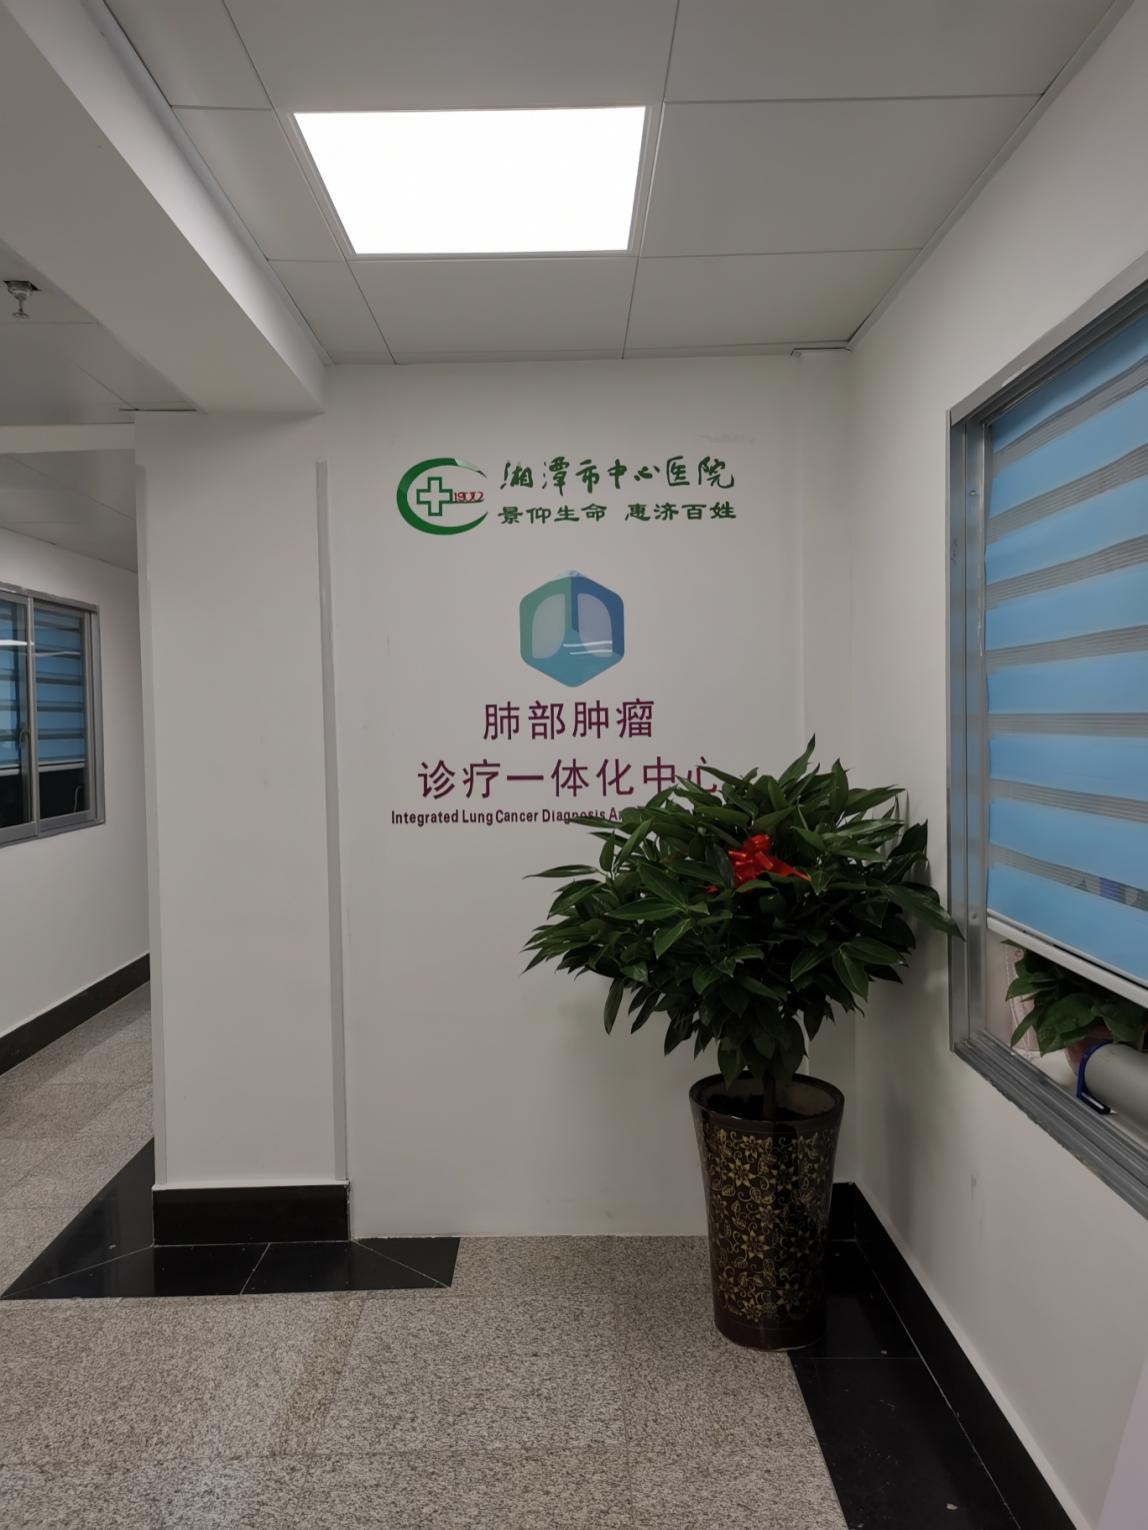 湘潭市中心医院呼吸科:肺癌,肺结节诊疗一体化中心正式开诊